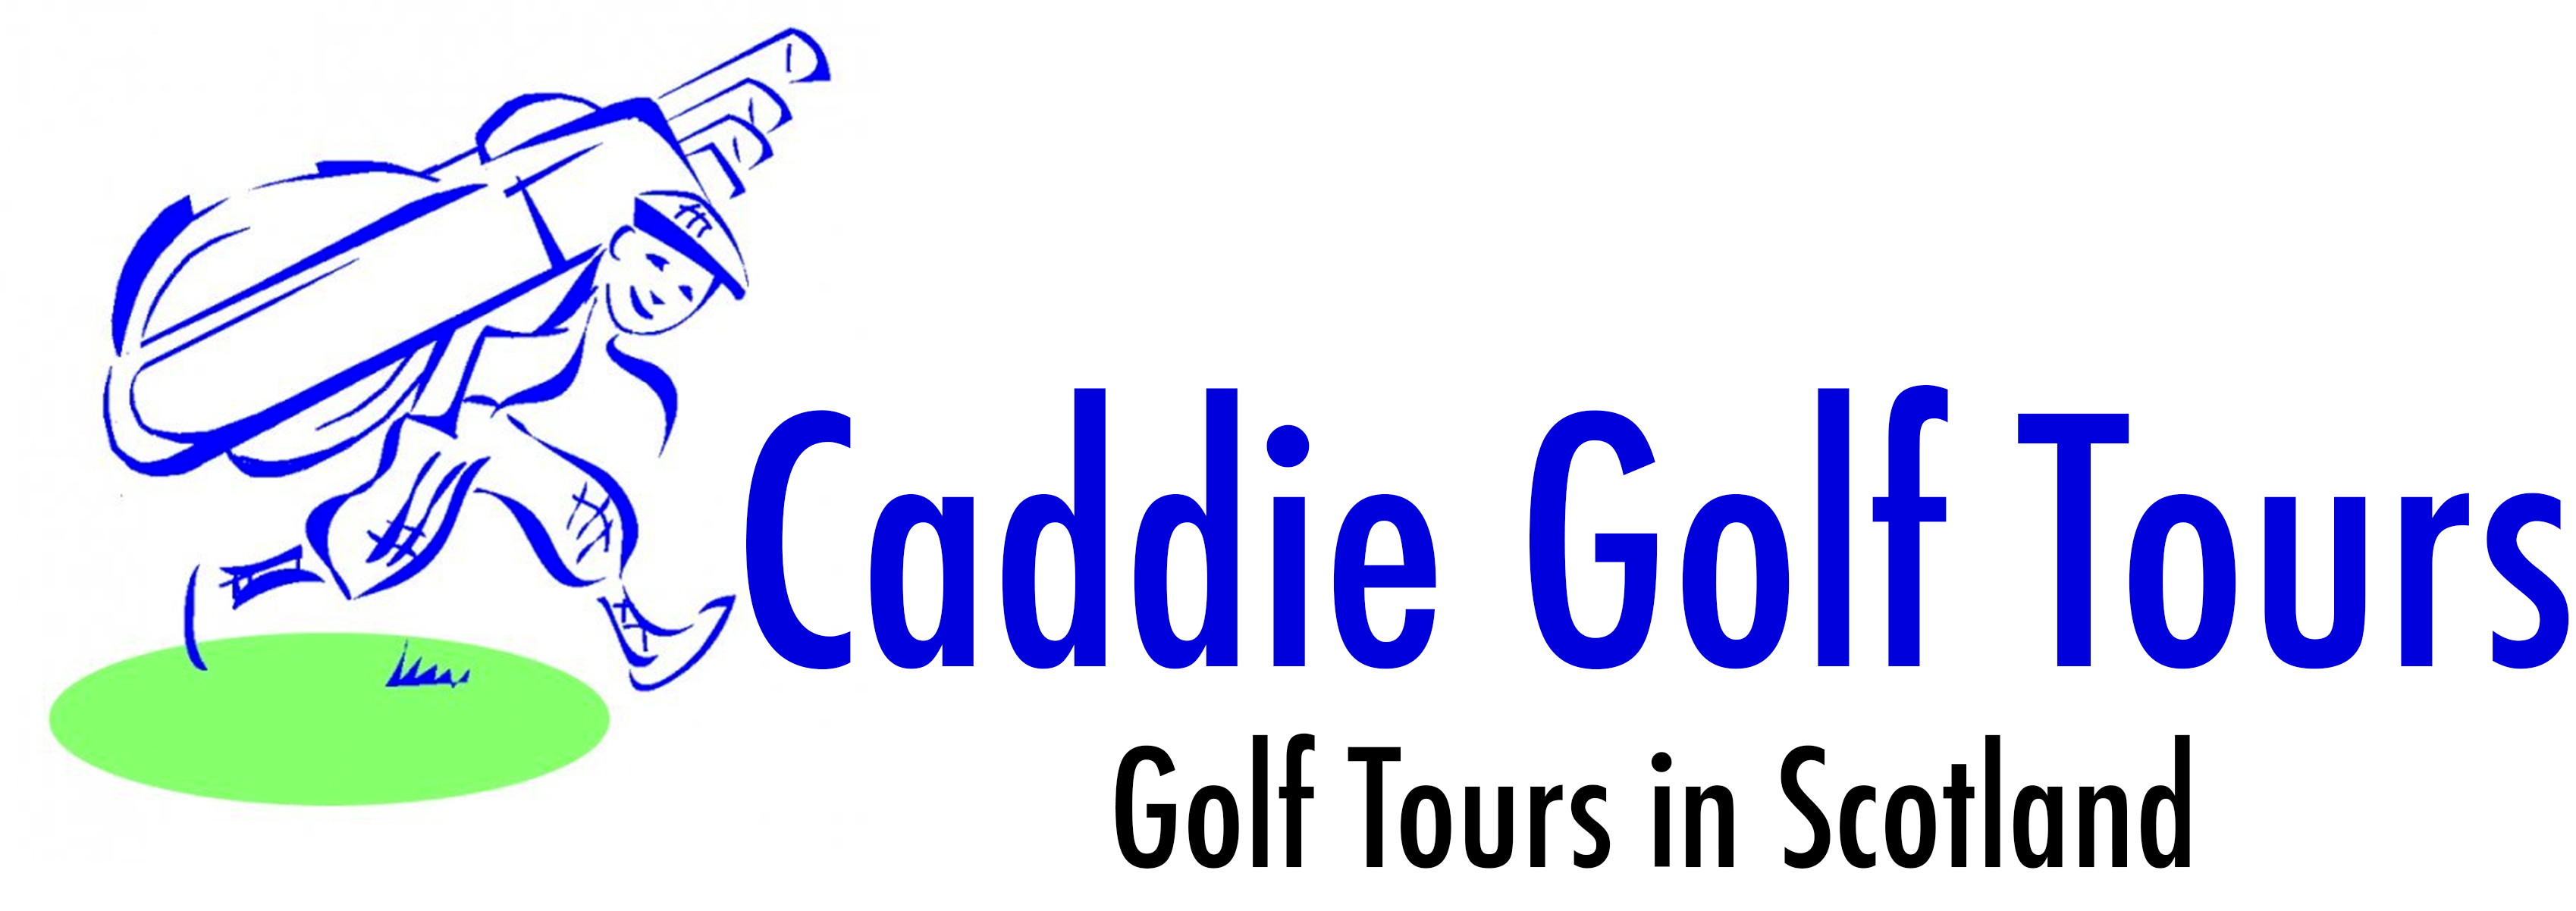 Caddie Golf Tours